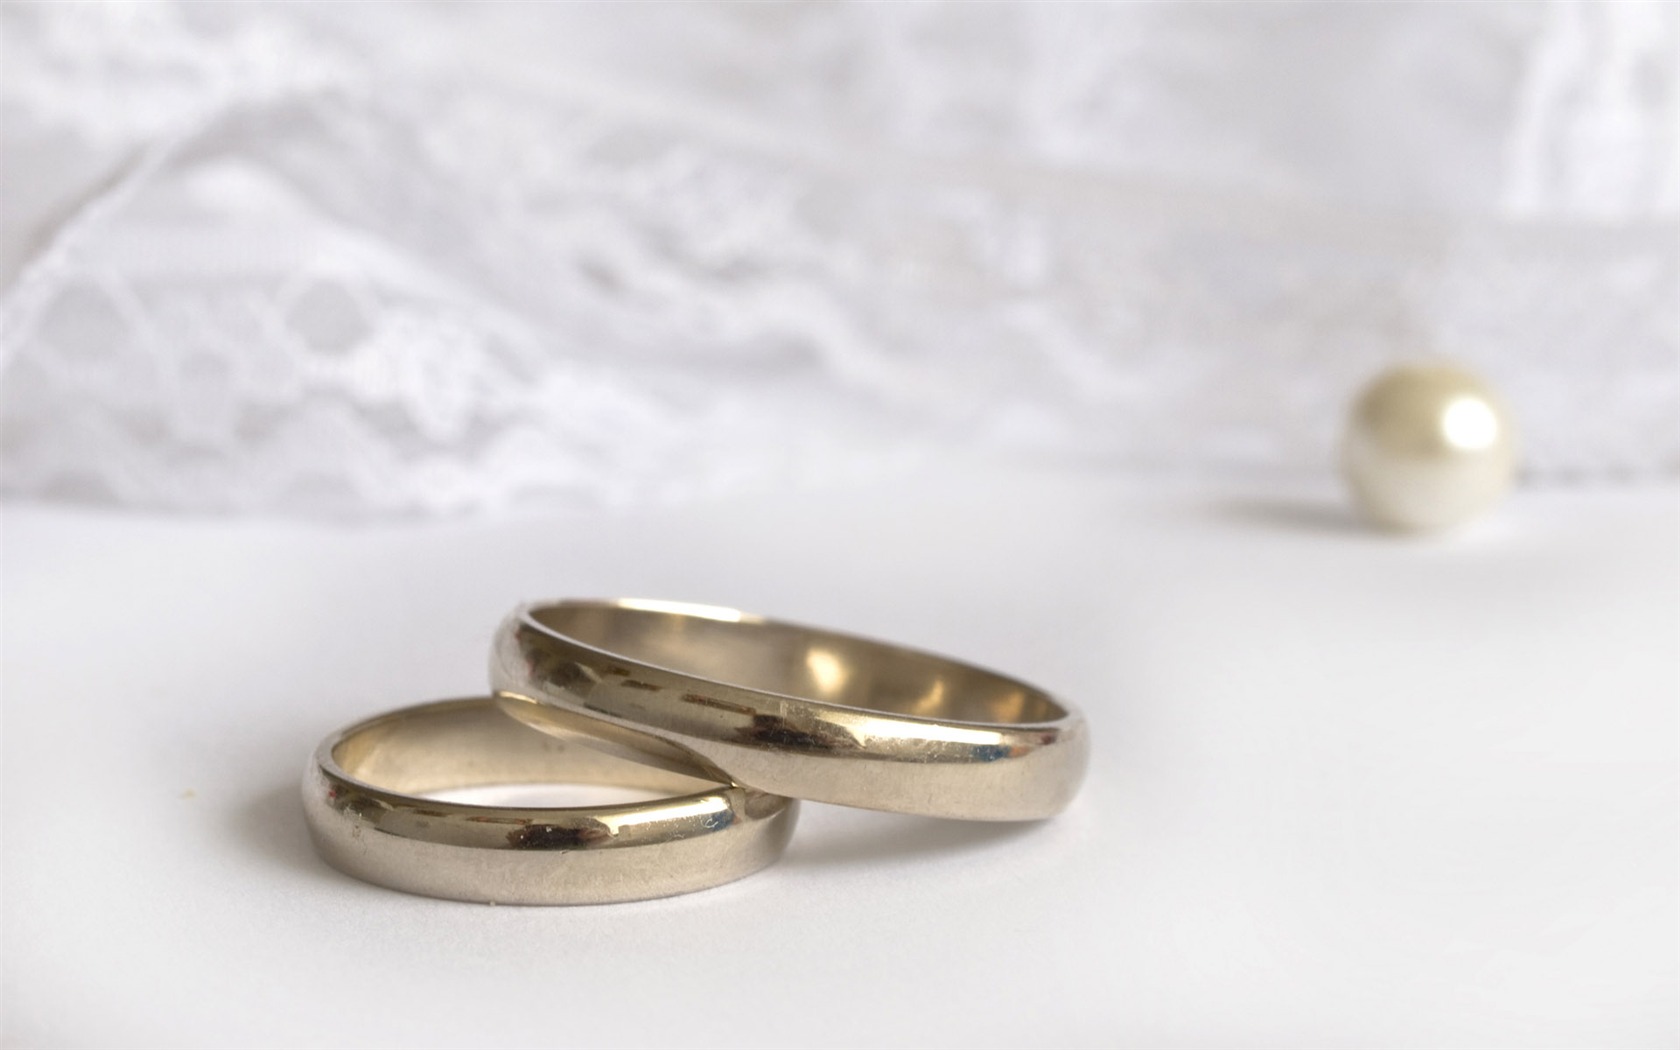 Mariage et papier peint anneau de mariage (2) #3 - 1680x1050